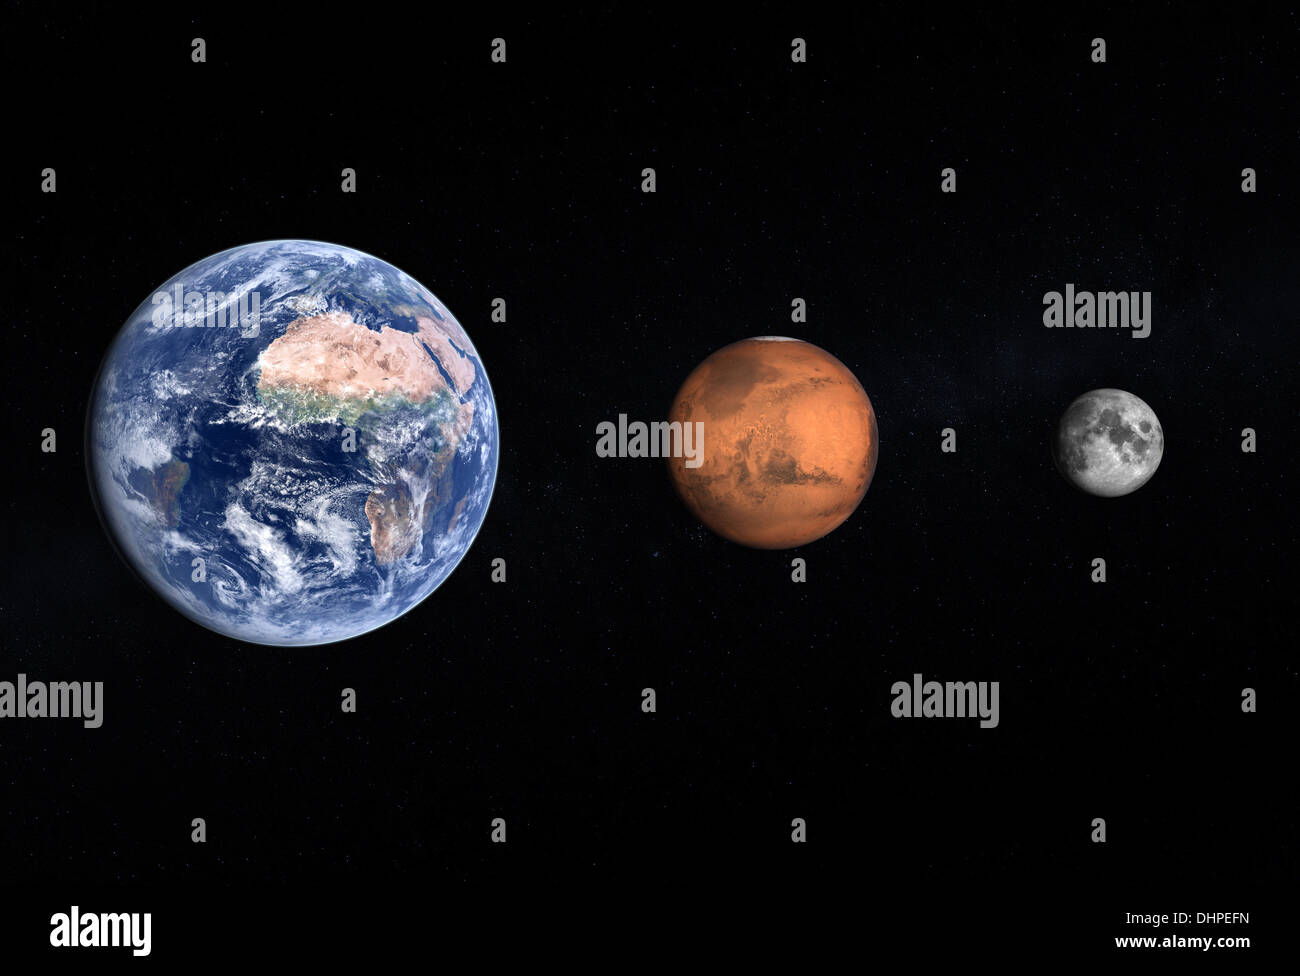 Une comparaison entre les planètes Terre et Mars et notre propre lune sur un fond étoilé. Banque D'Images